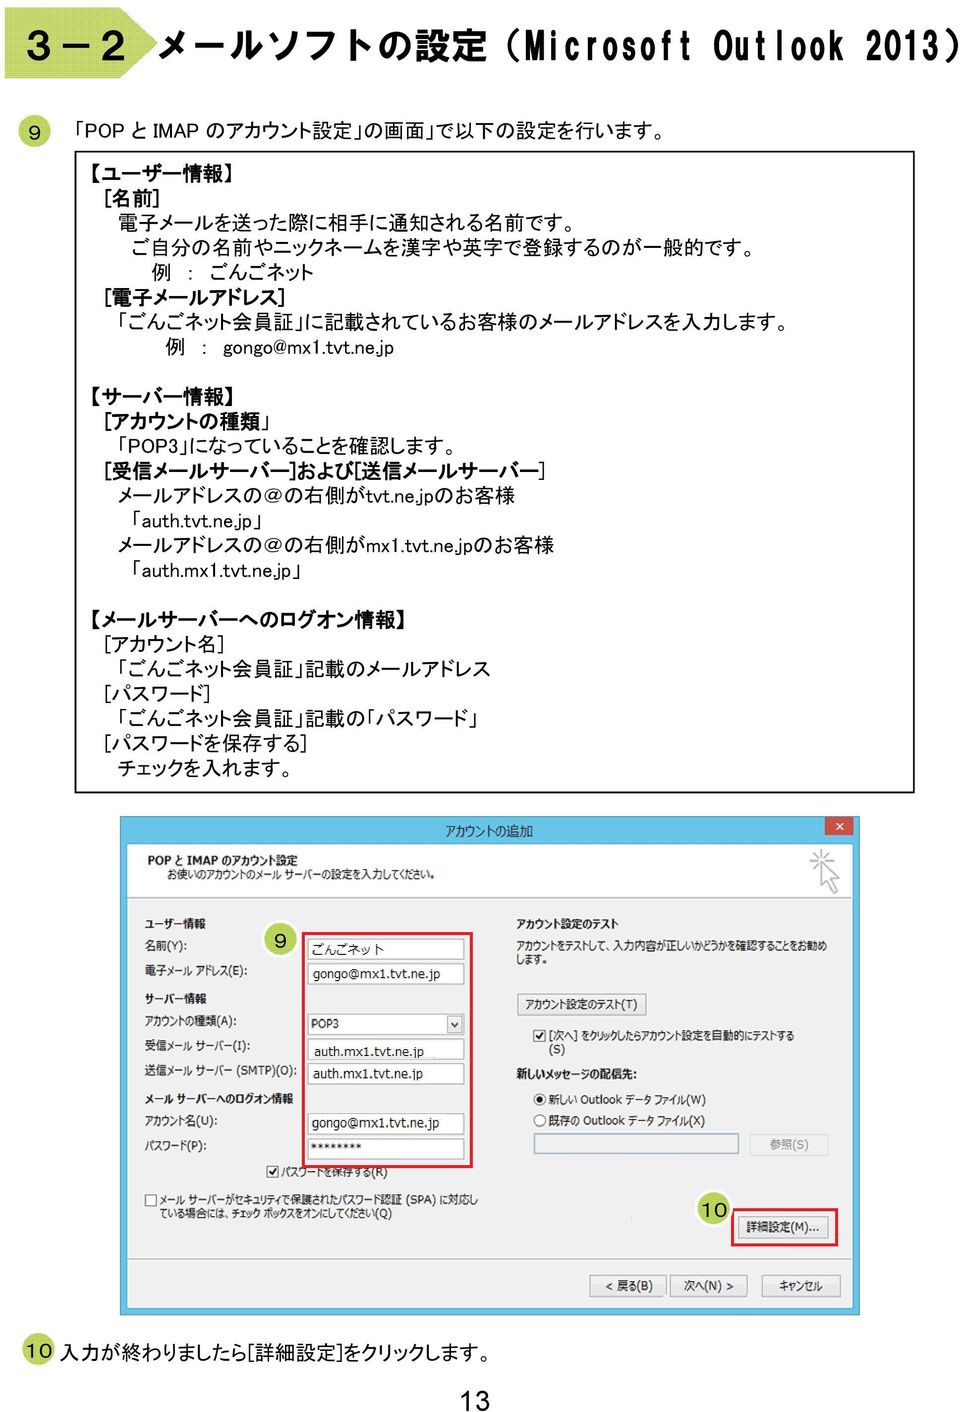 jp サーバー 情 報 [アカウントの 種 類 POP になっていることを 確 認 します [ 受 信 メールサーバー]および および[ 送 信 メールサーバー] メールアドレスの@の 右 側 がtvt.ne.